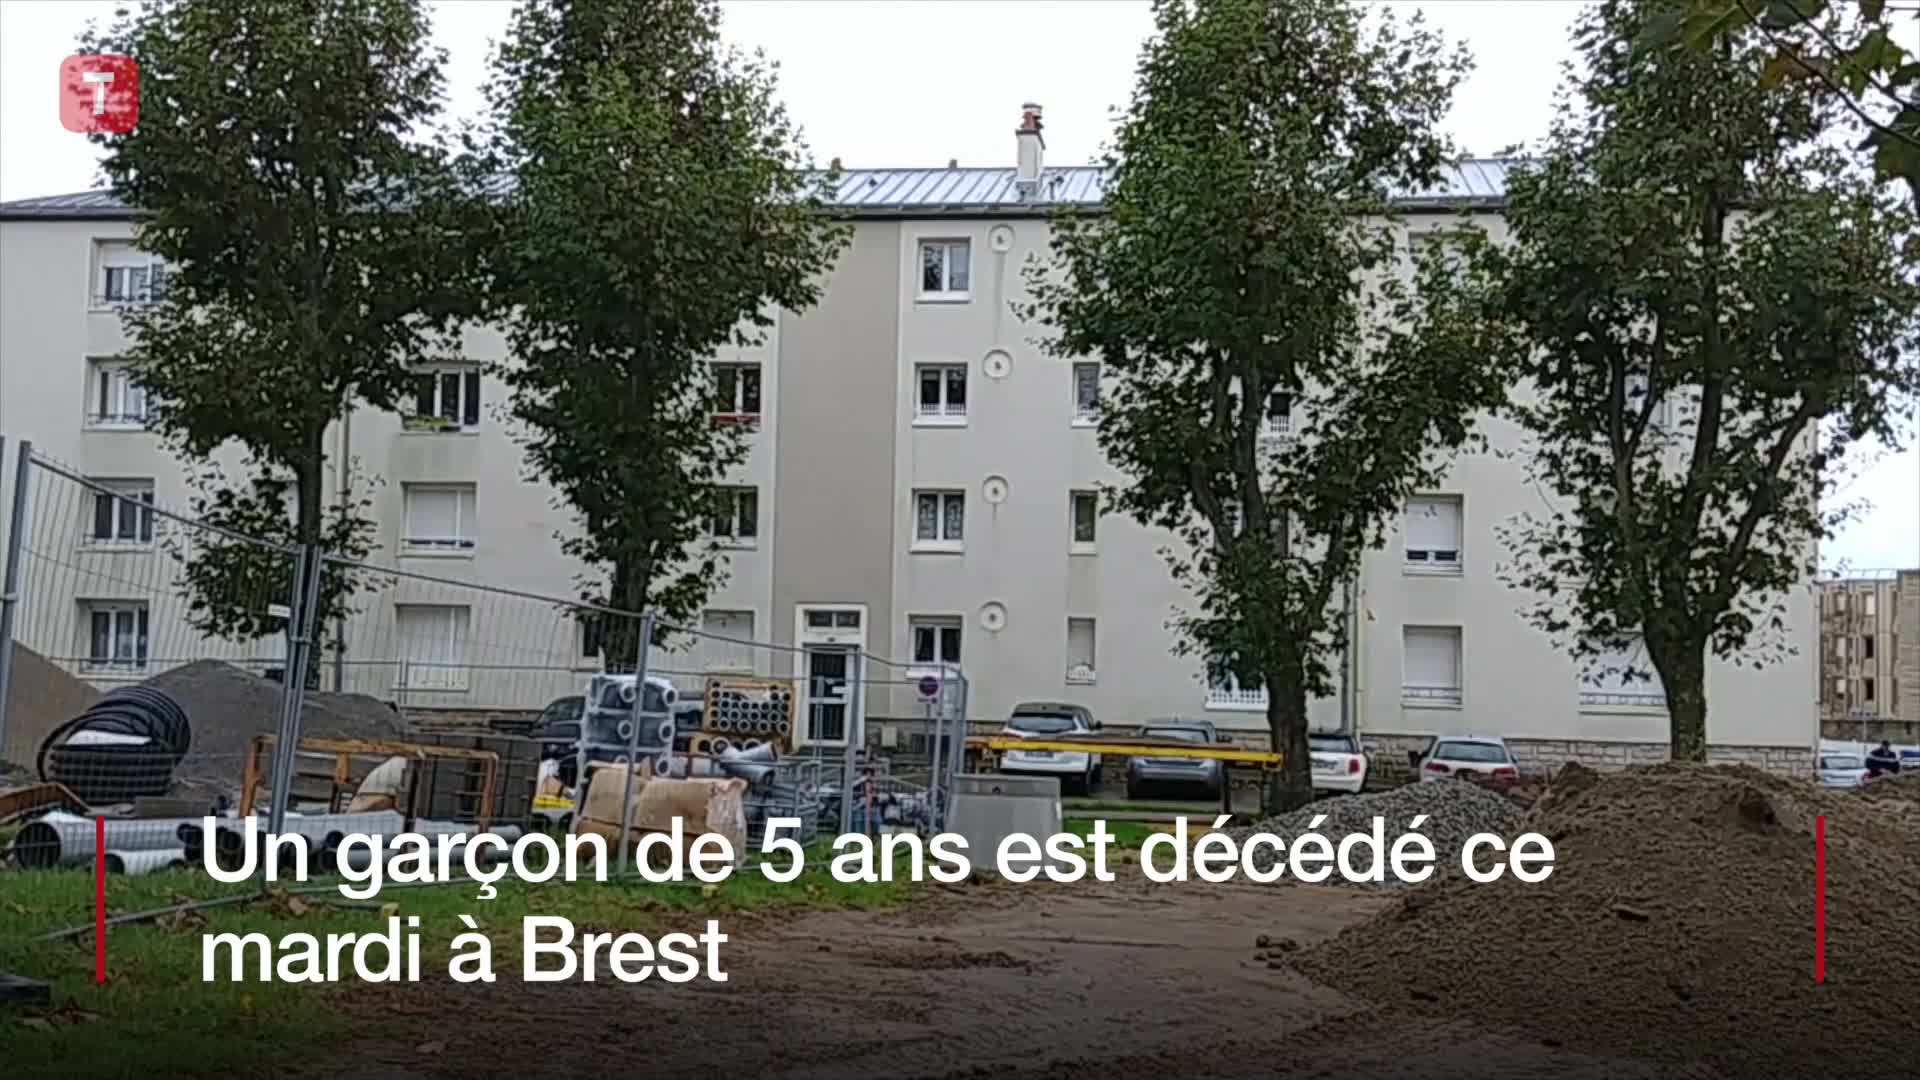 Brest. Un garçon de cinq ans décédé (Le Télégramme)